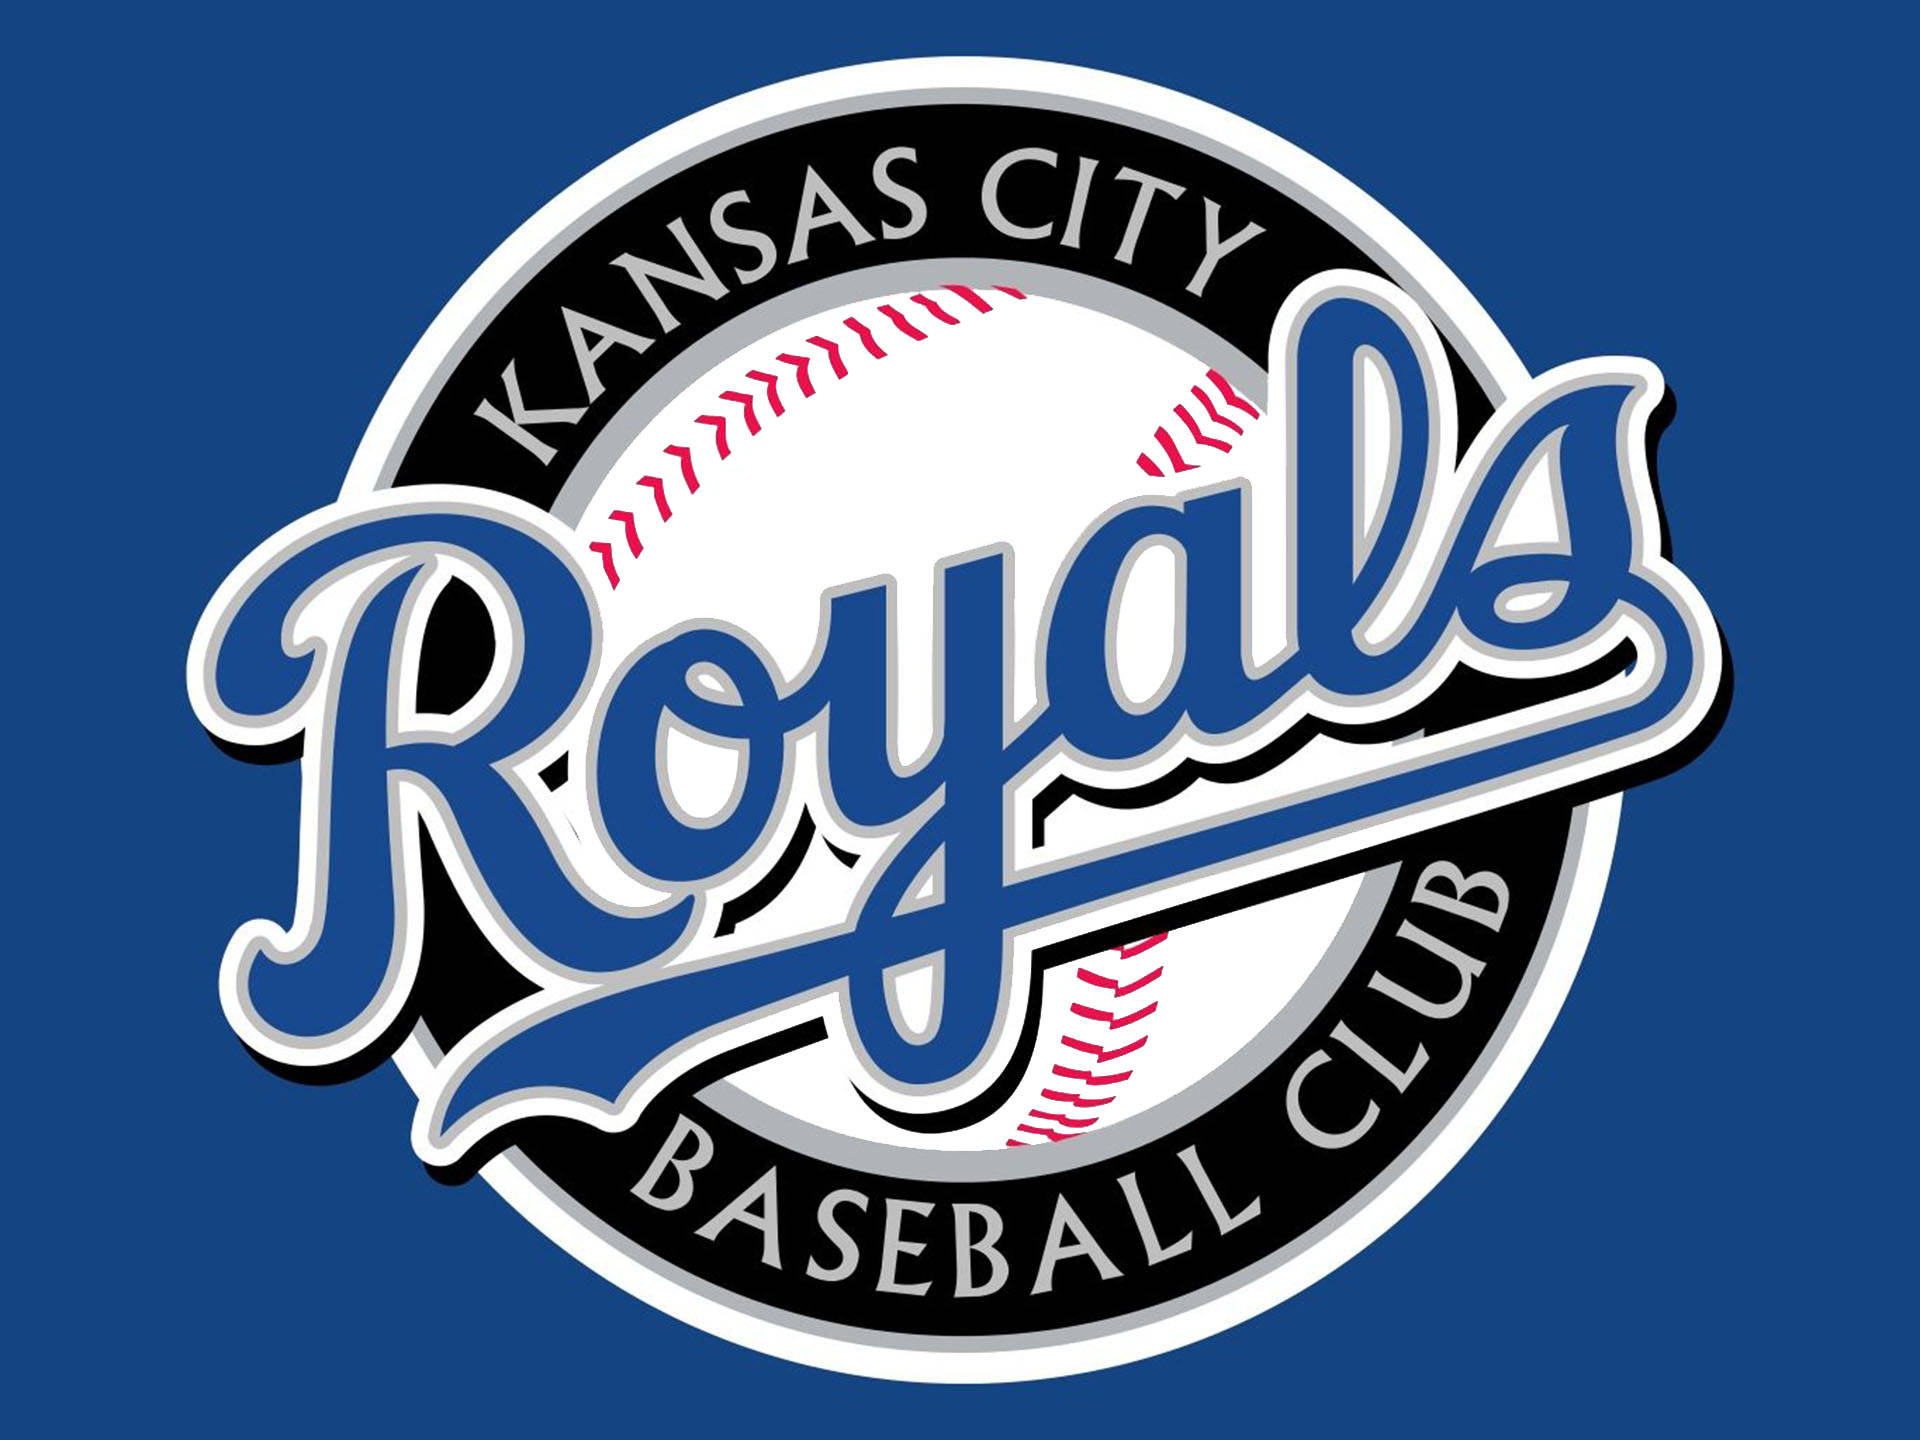 Kansas City Royals Baseball Club